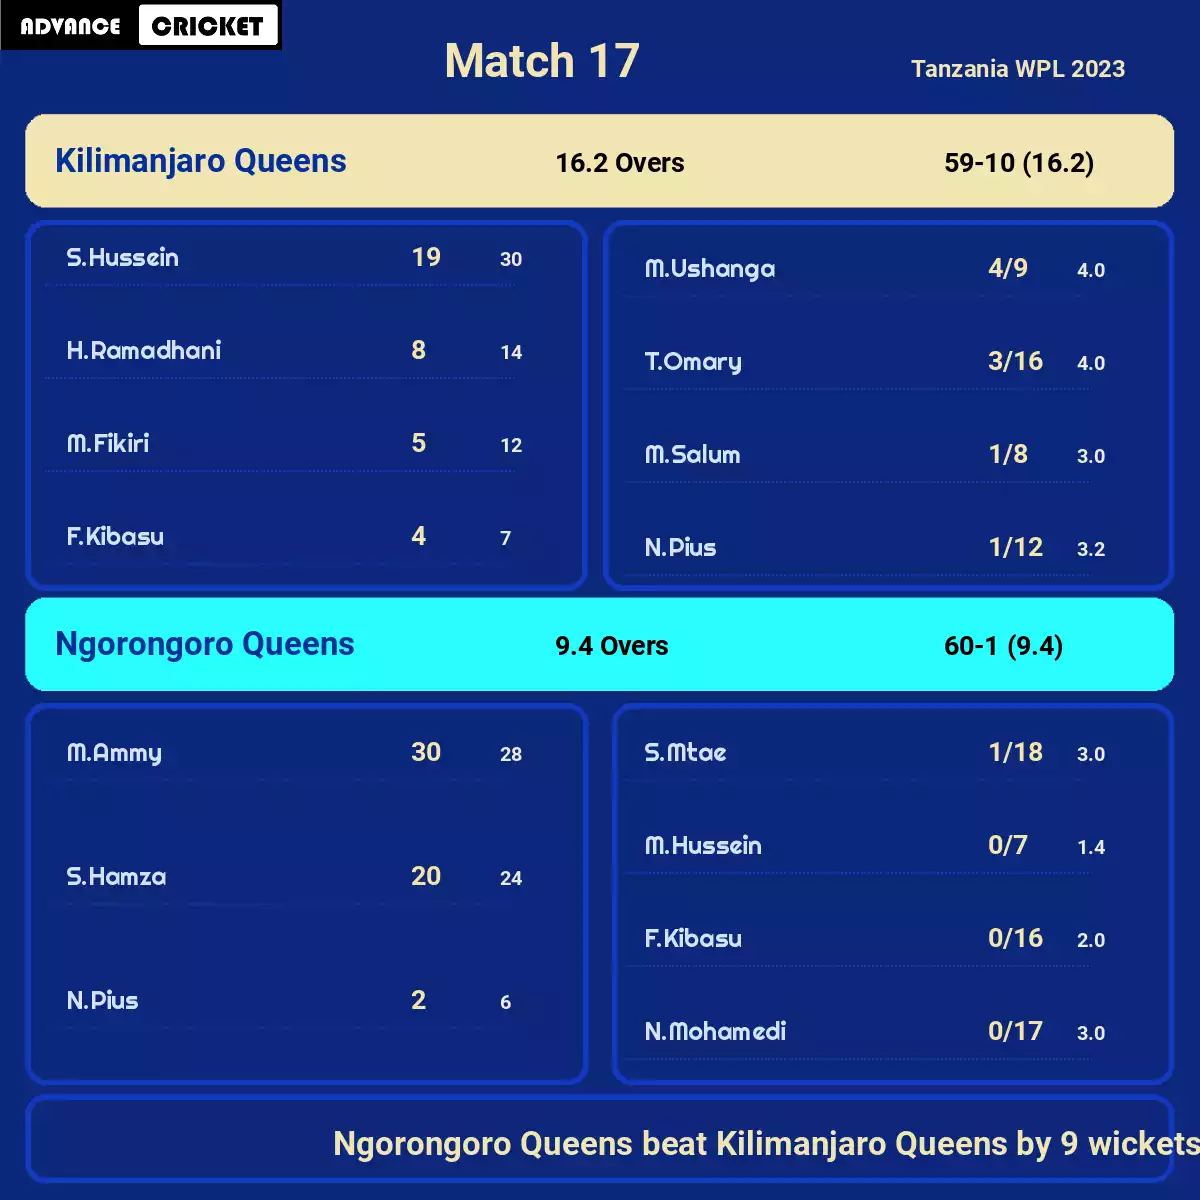 NGQ vs KJQ Match 17 Tanzania WPL 2023